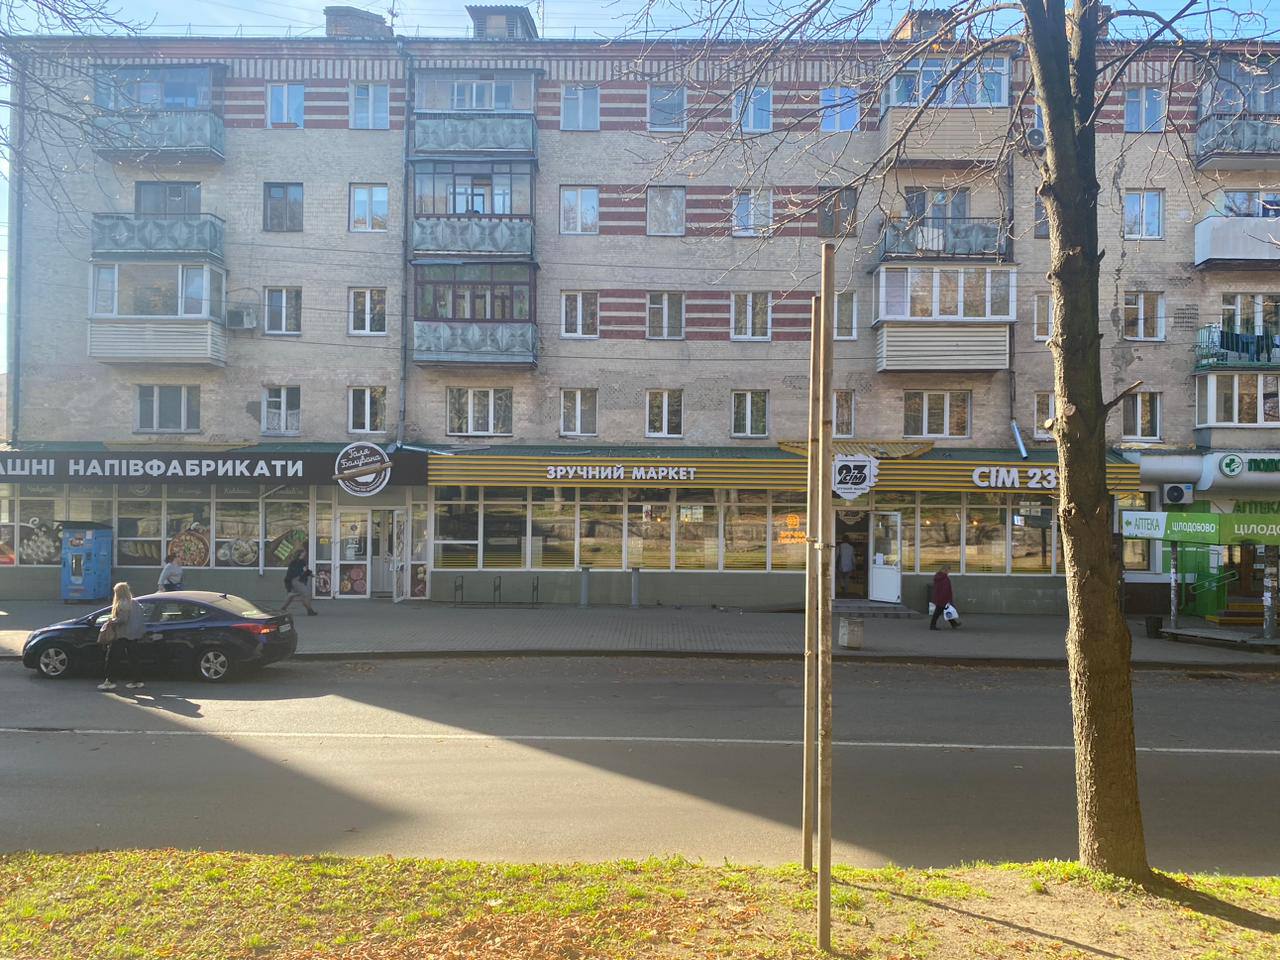 Магазин «Кооператор», що у Рівному на вул.Чорновола, продали за 206 тисяч гривень, тоді як експерти його оцінили у понад 10 мільйонів гривень.